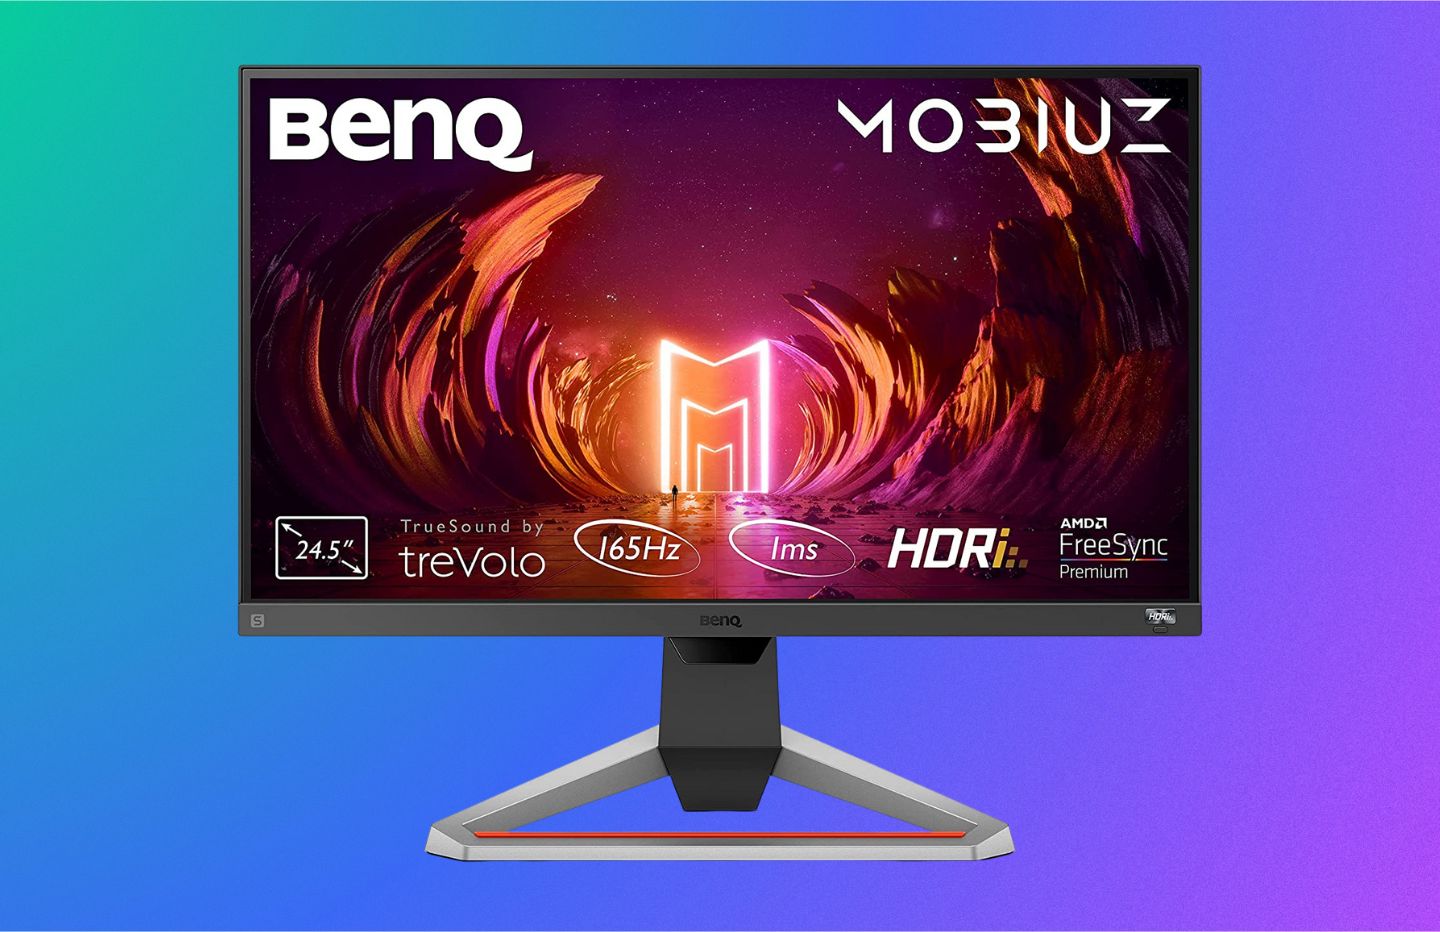 L'écran PC gaming BenQ Mobiuz de 24 pouces (165 Hz, 1ms) est en